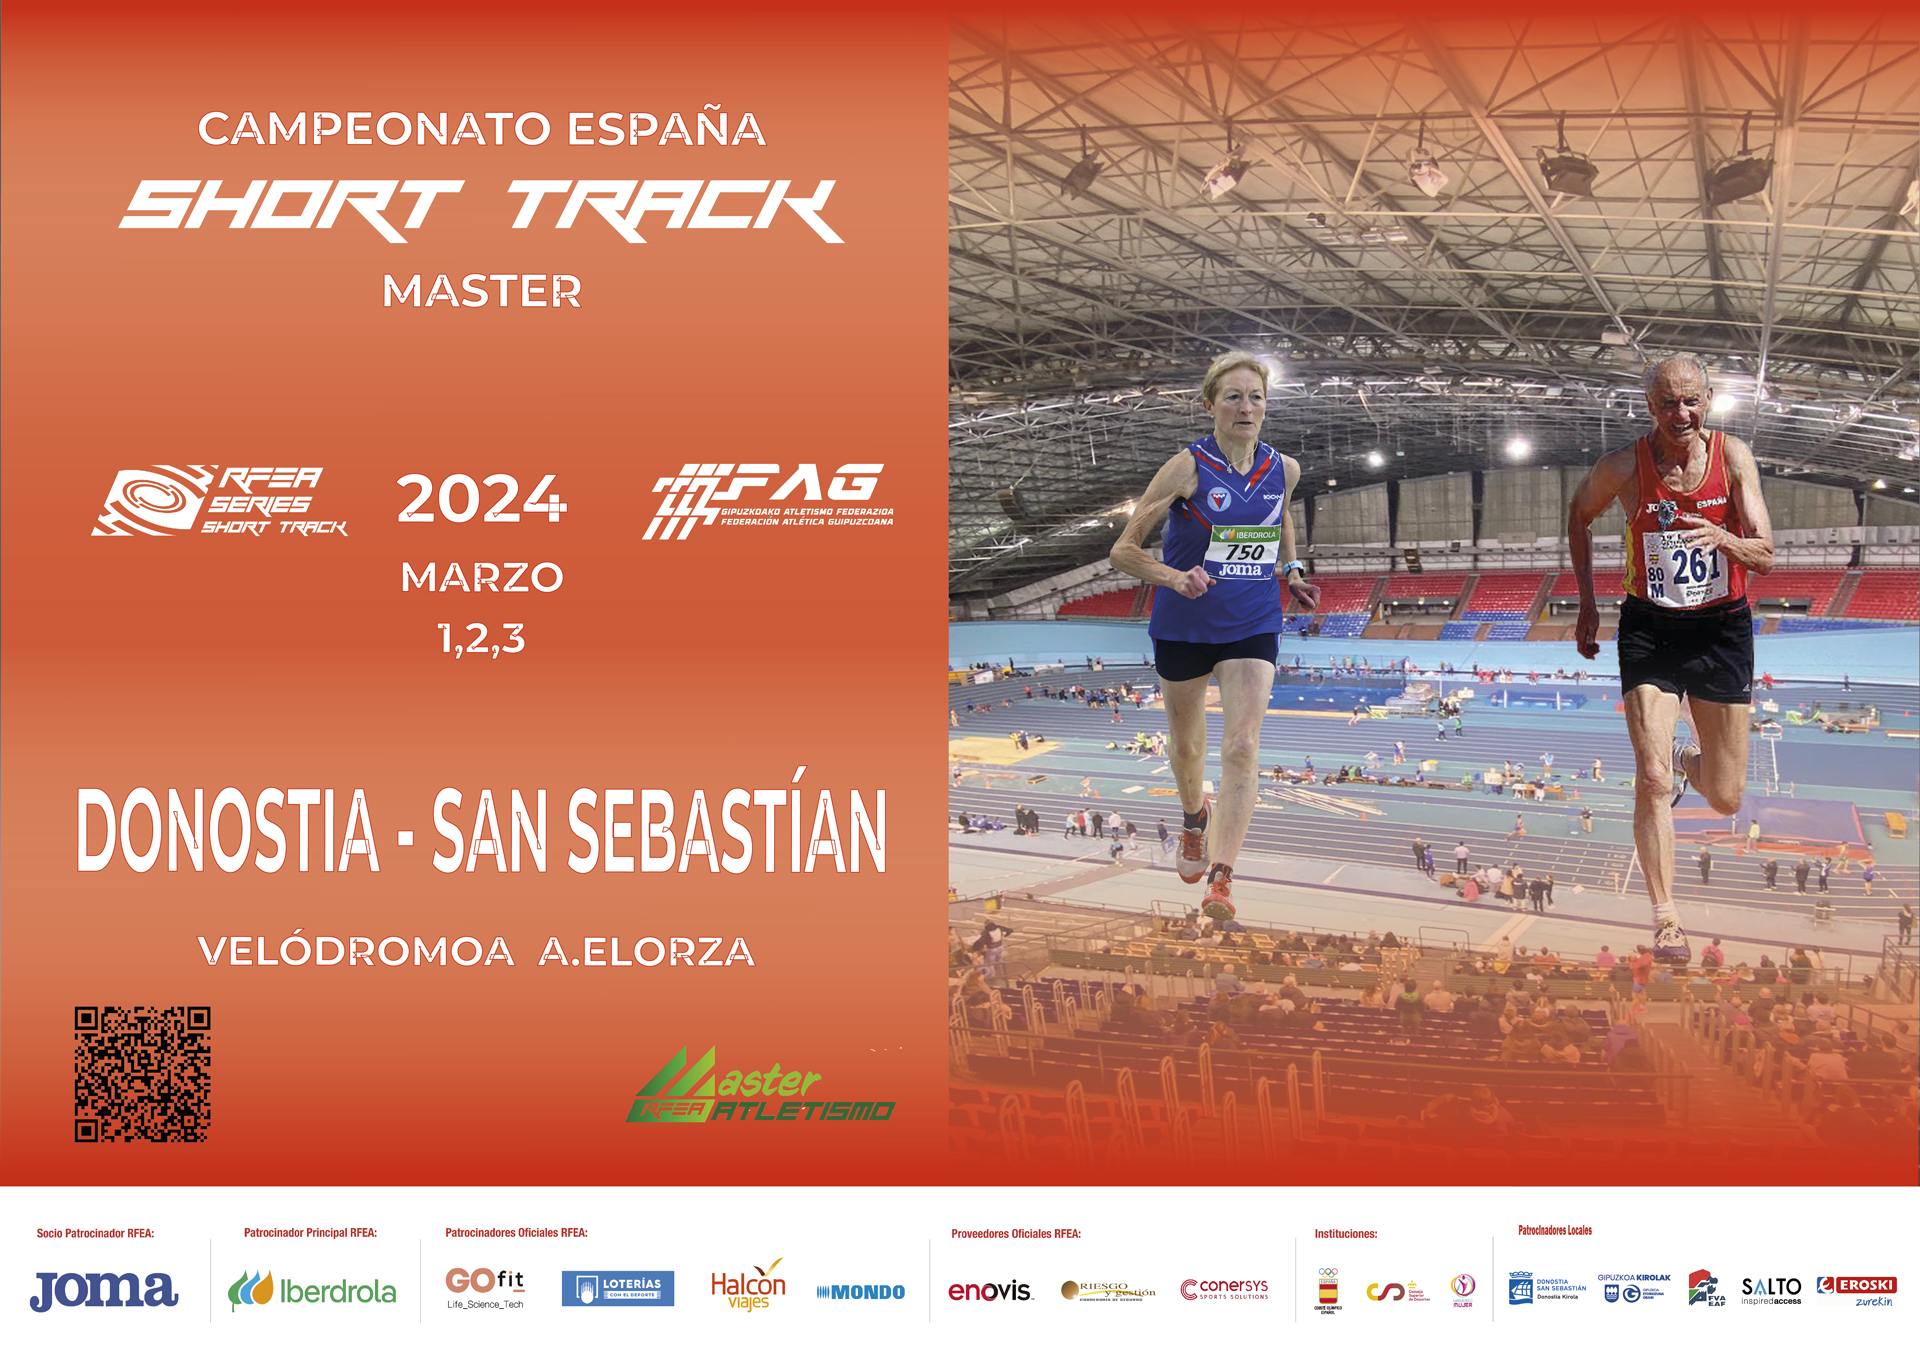 Campeonato de España Master Short Track (todos los días)